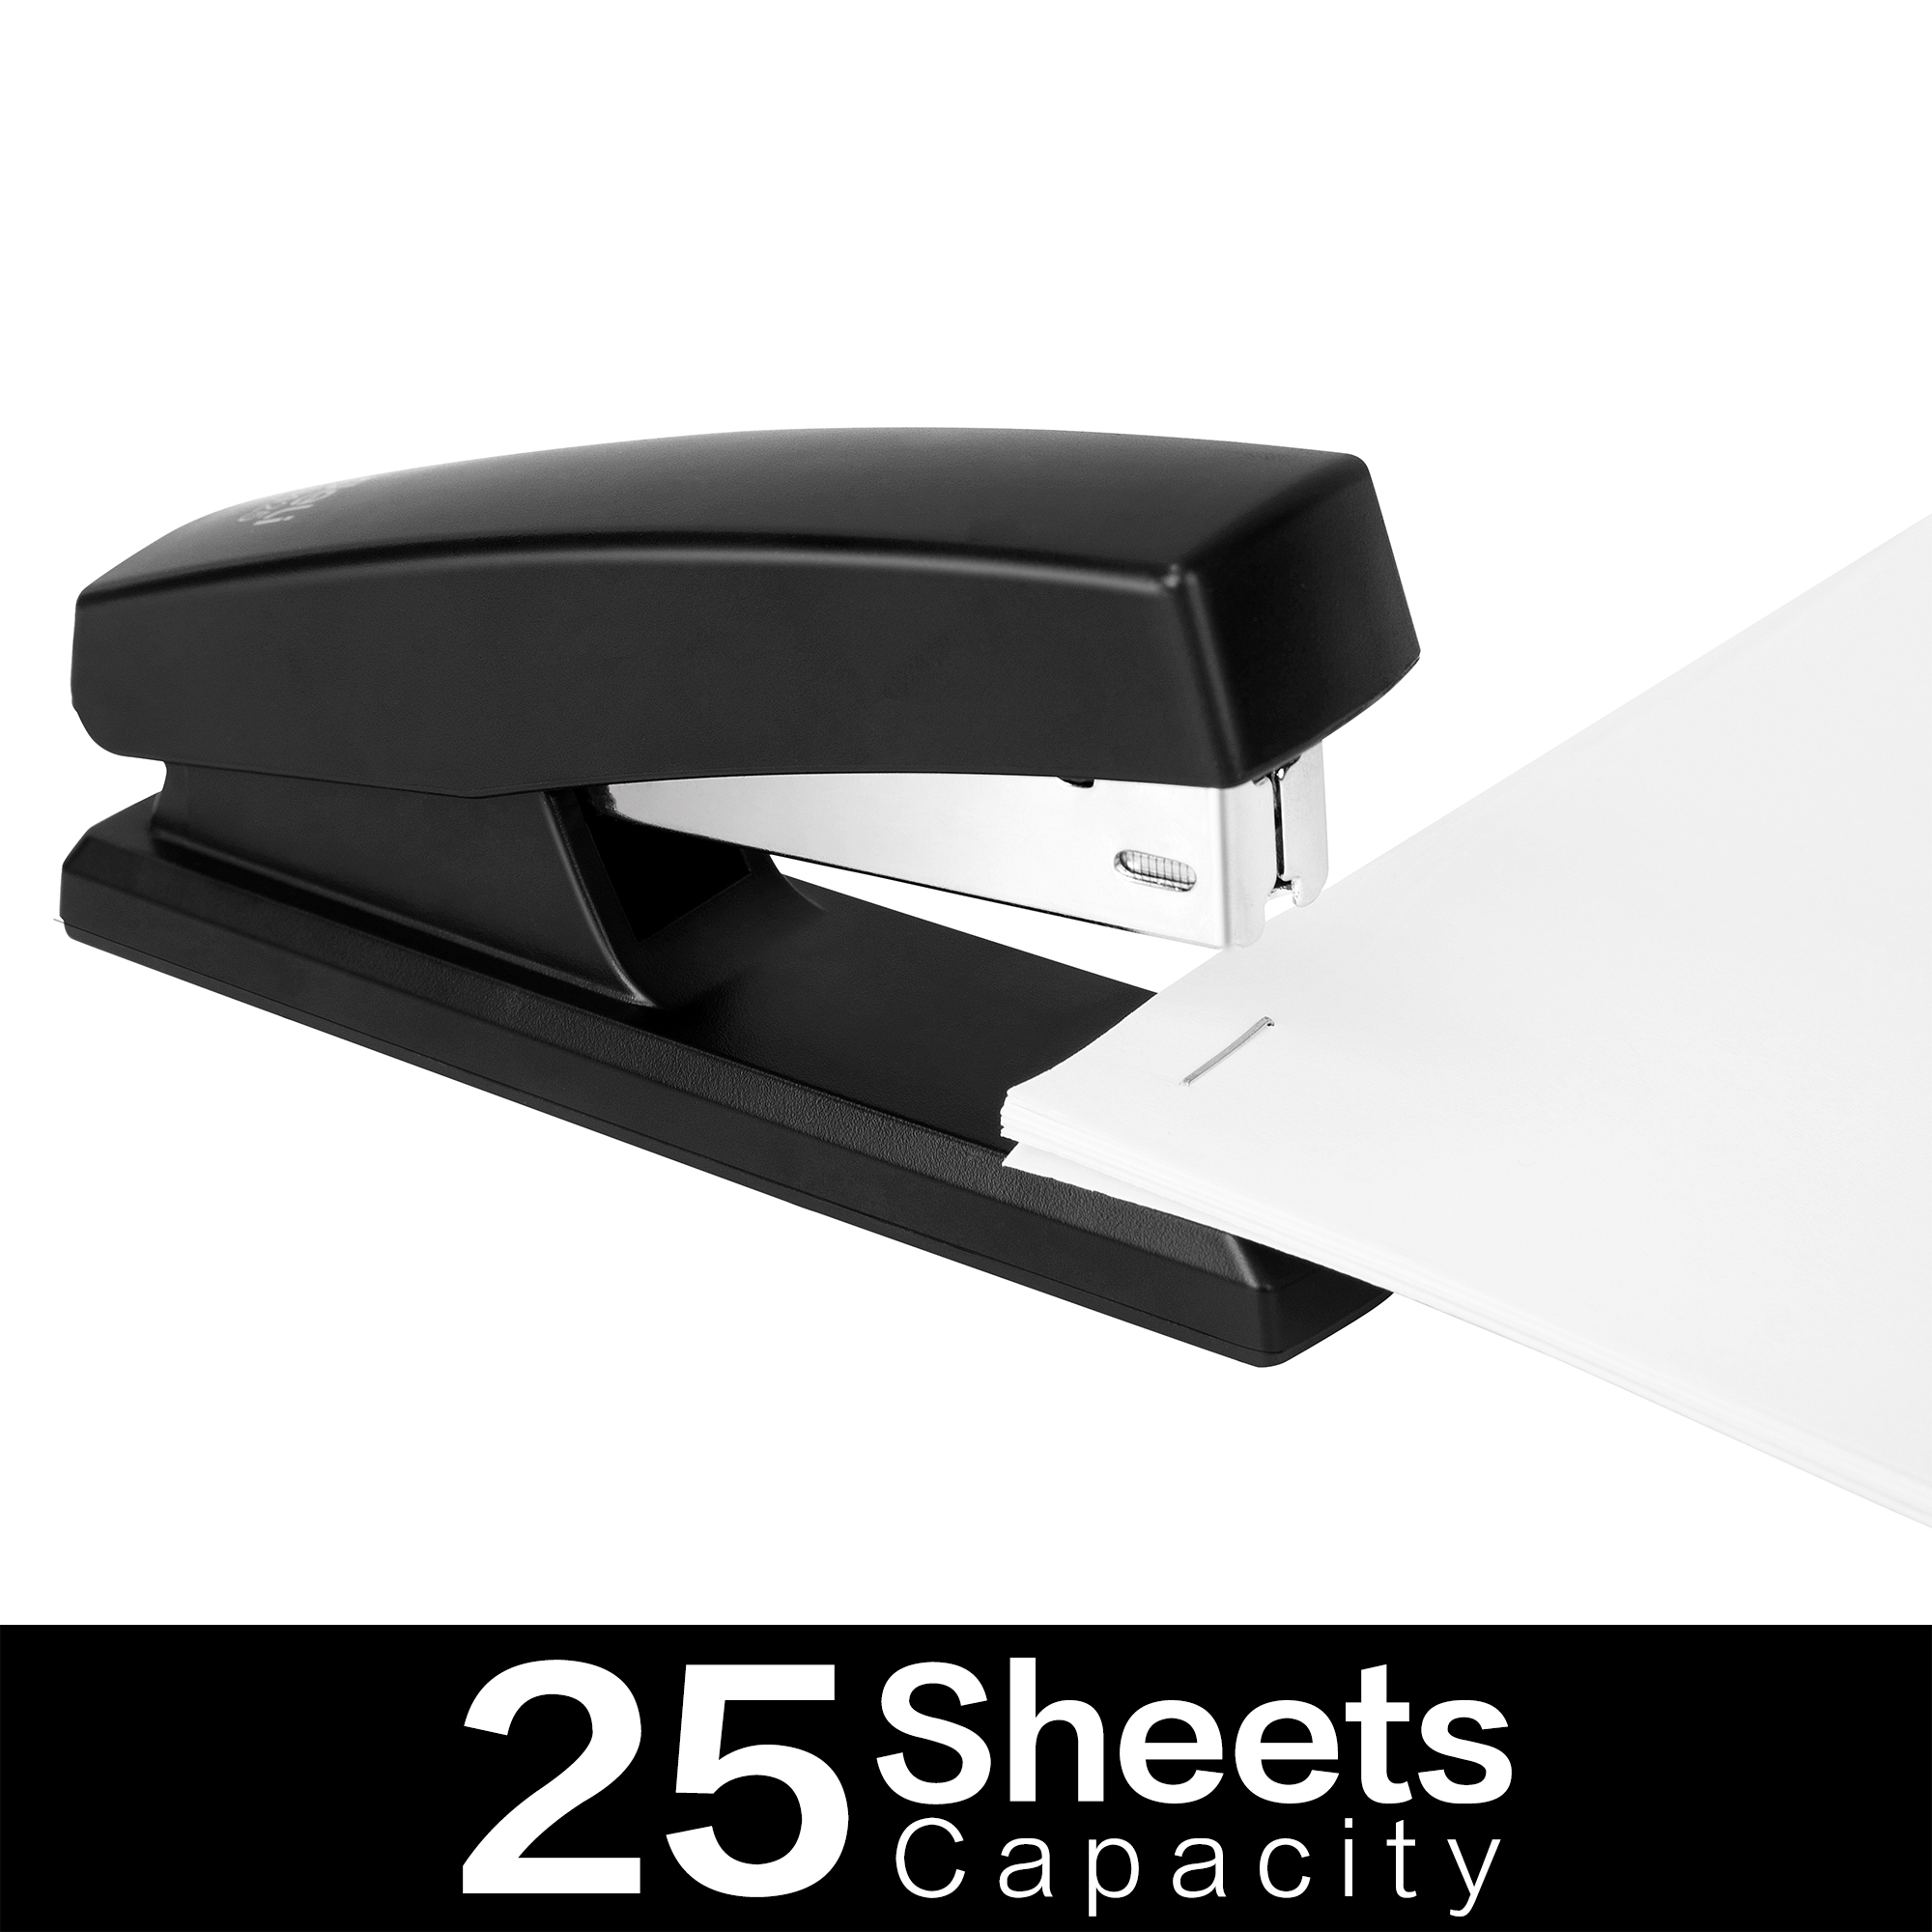 Grapadora giratoria de 360 grados, grapadora de escritorio comercial  flexible, con capacidad de 25 hojas, grapadoras manuales con un modelo de  grapa